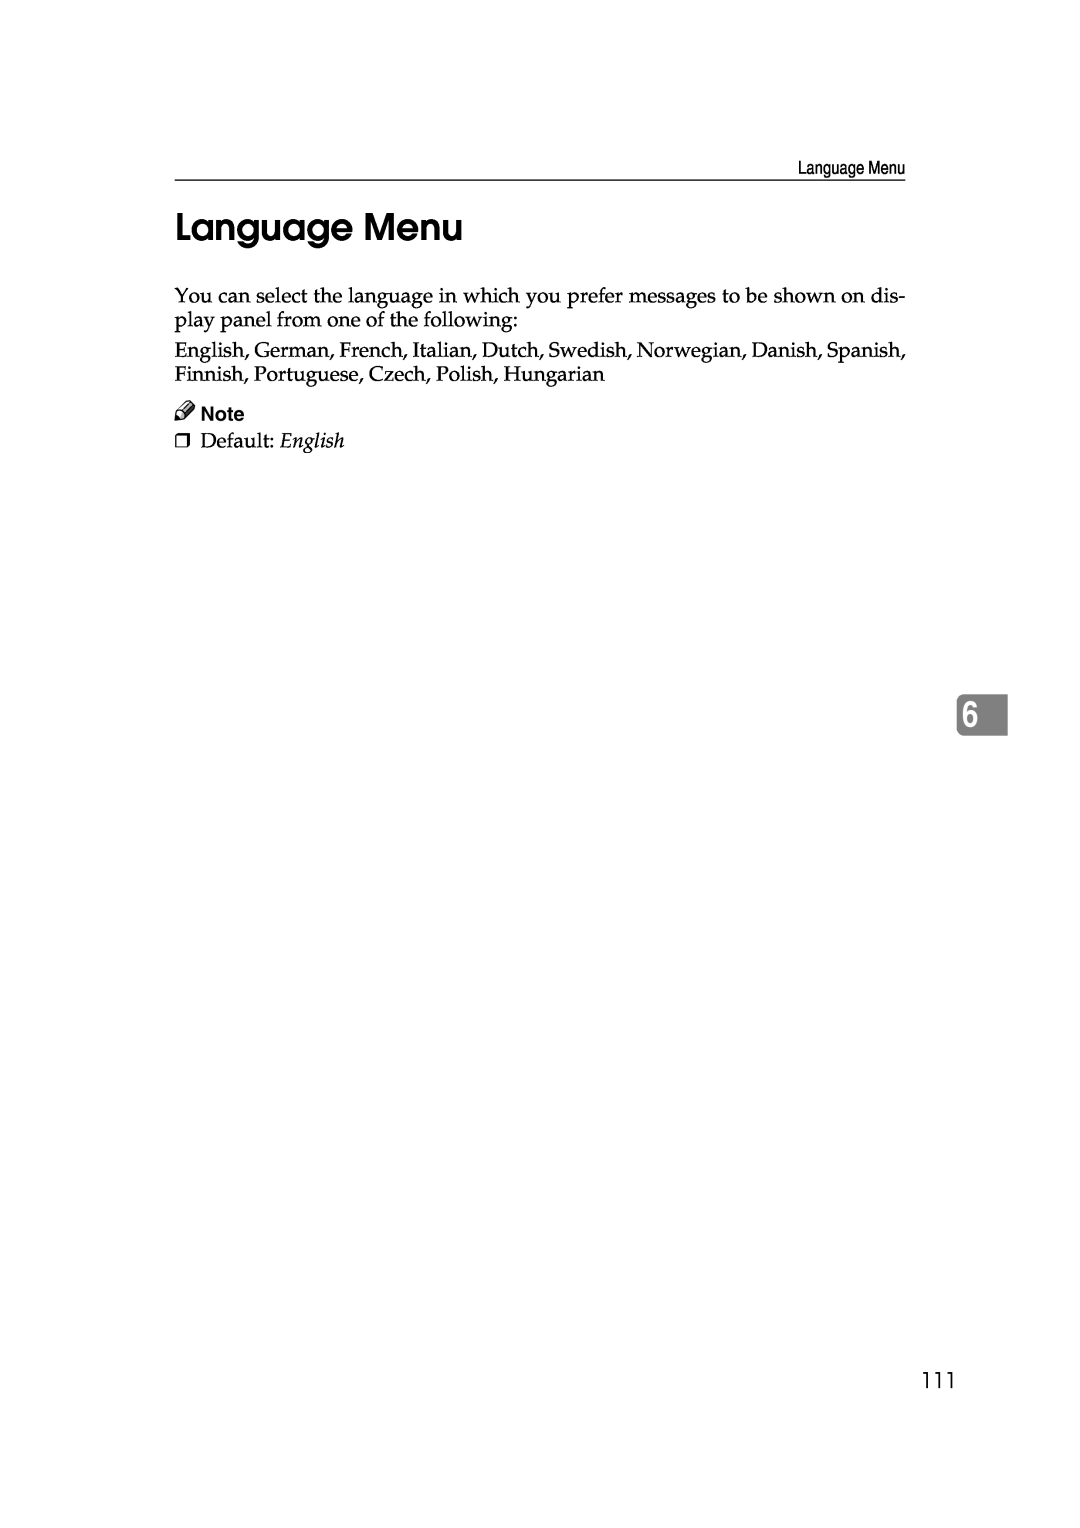 Lanier AP3200 manual Language Menu 